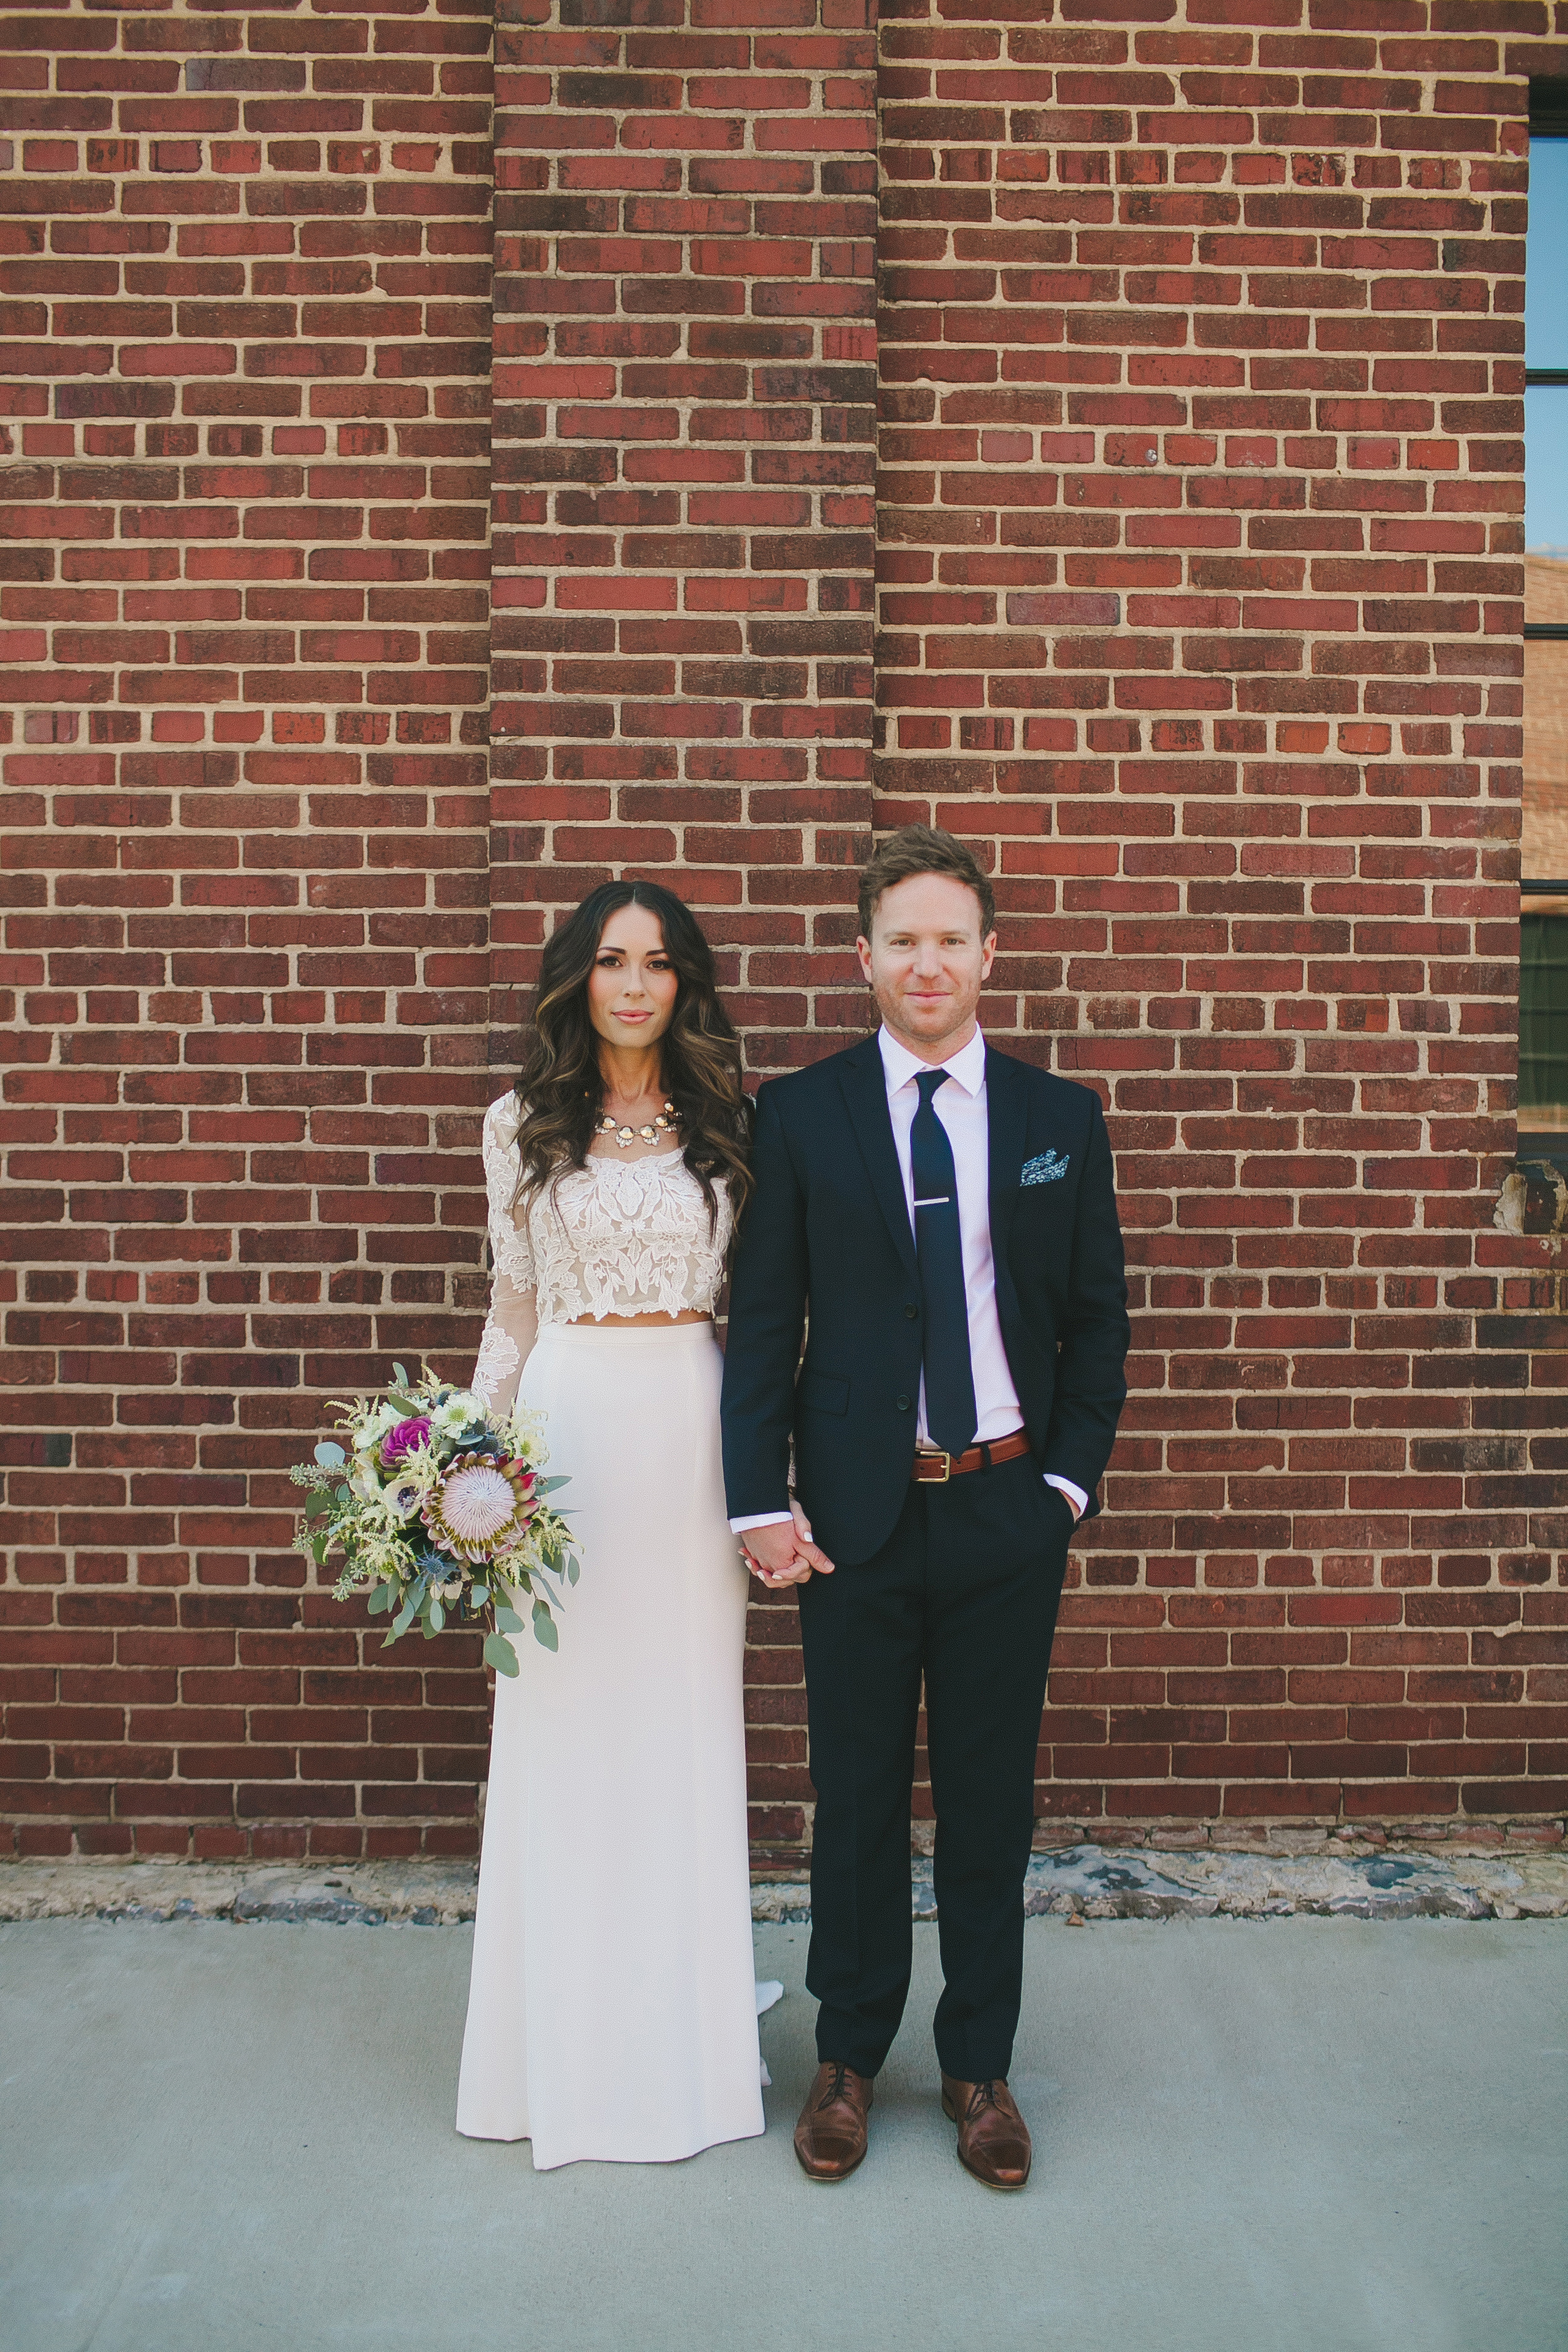 Stylish Bride and Groom // Nashville Wedding Flowers